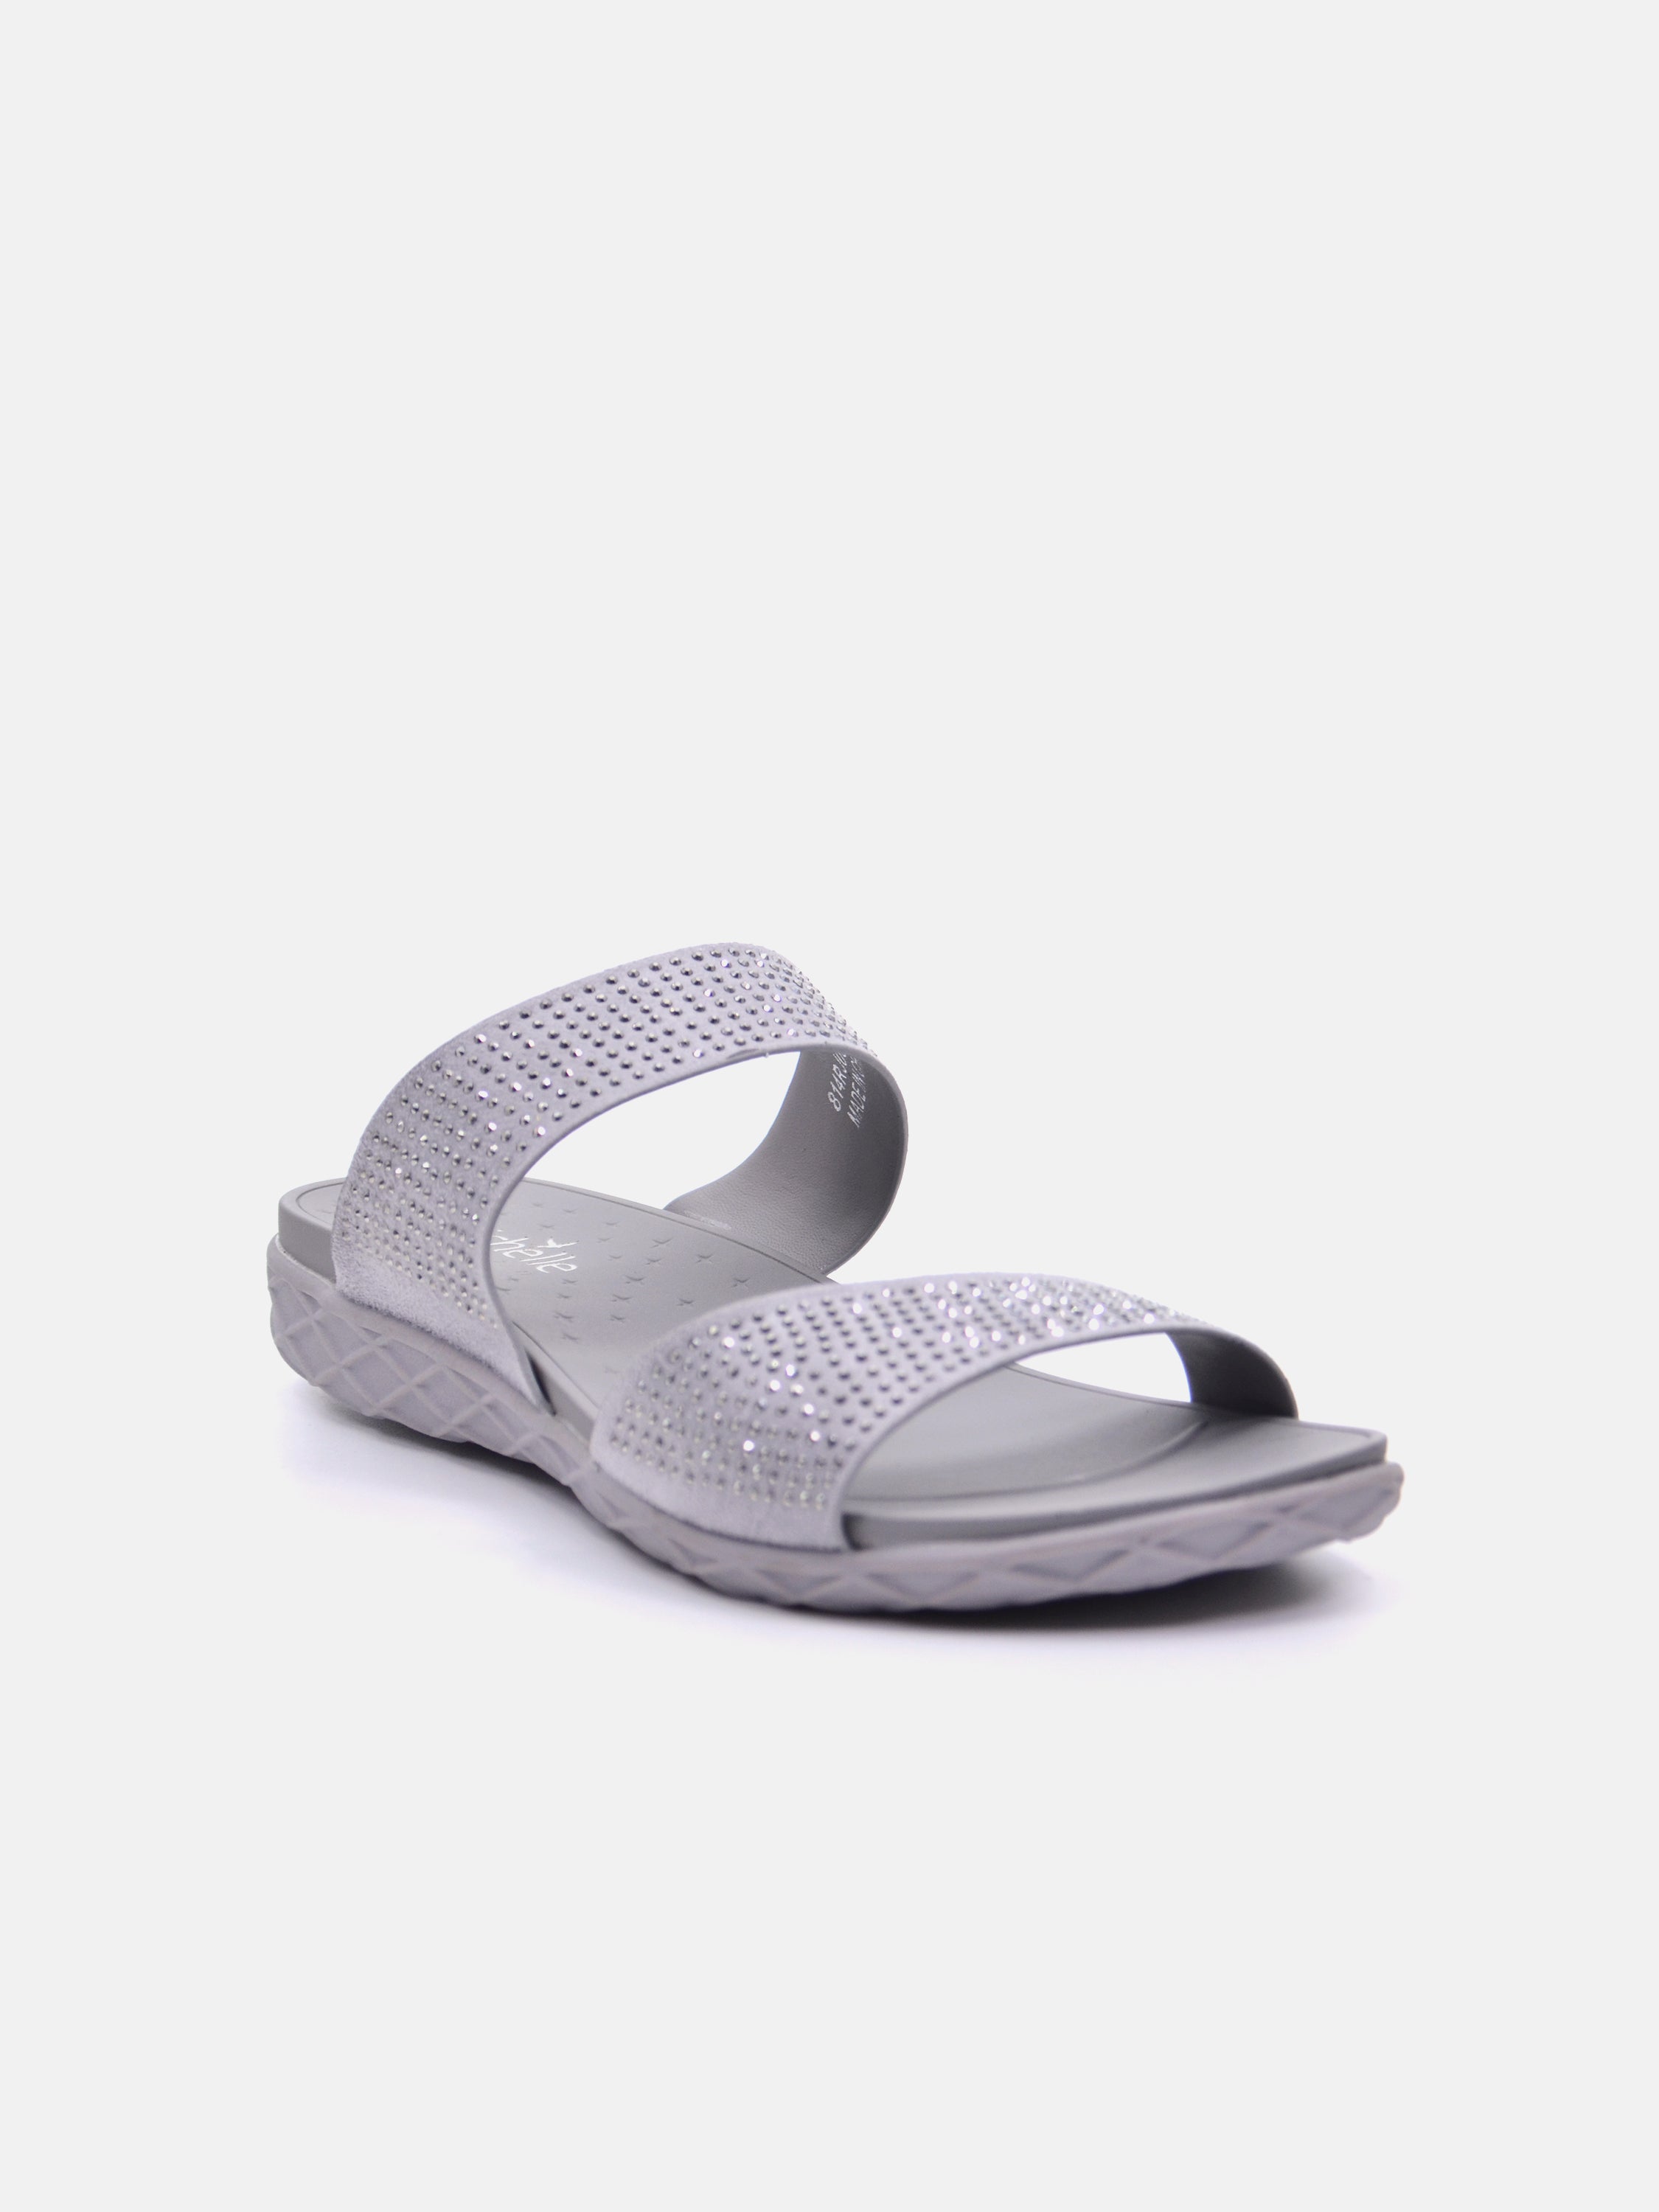 Michelle Morgan 814RJ082 Women's Flat Sandals #color_Silver